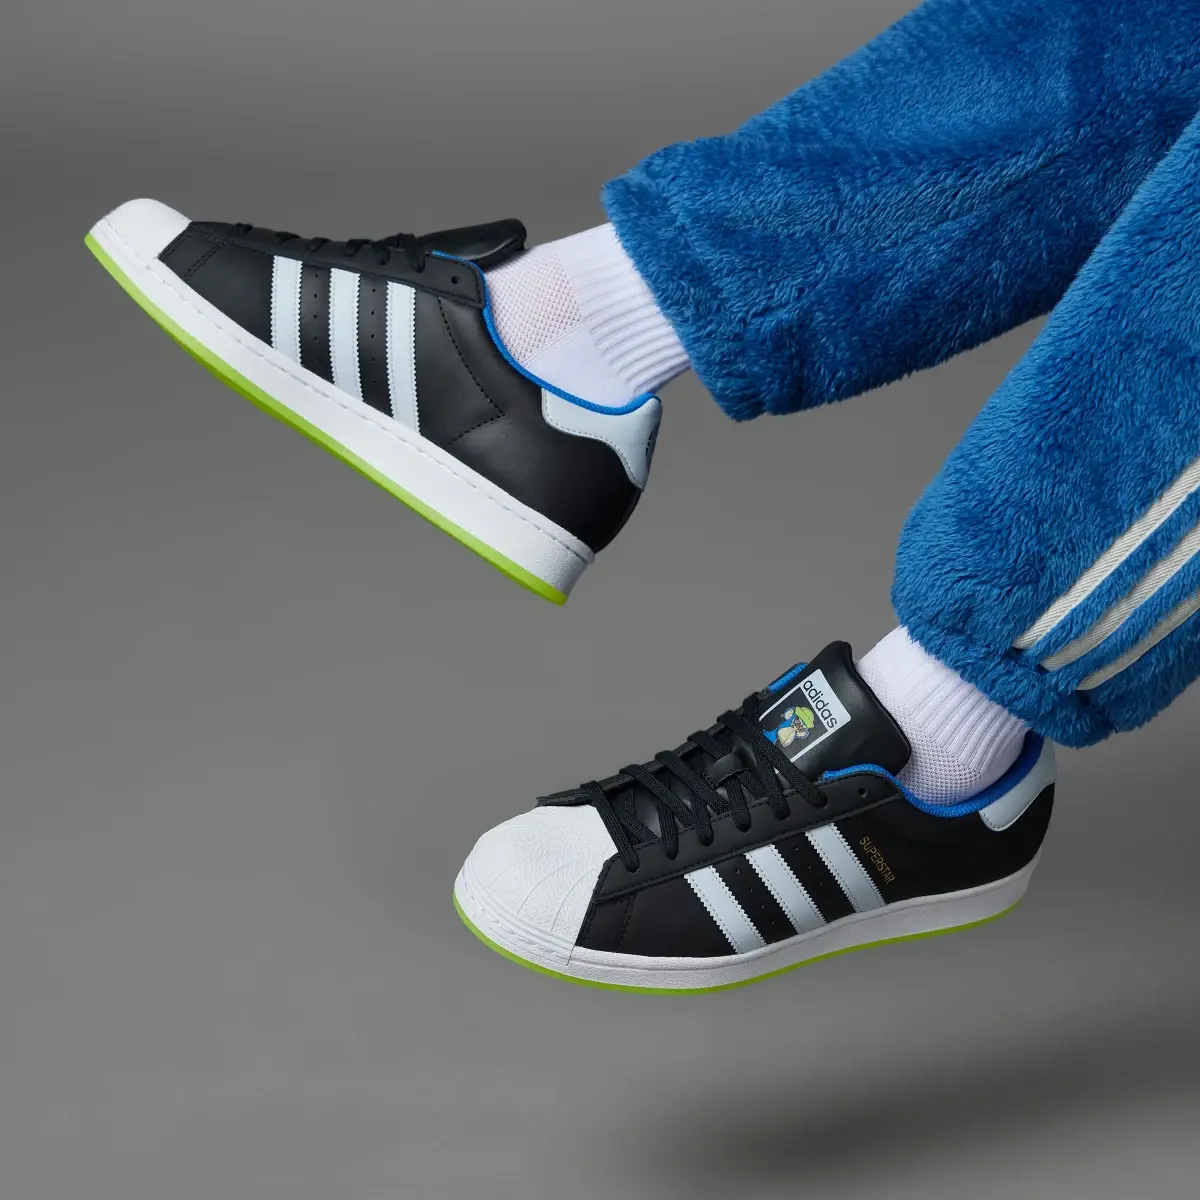 Adidas Superstar x Indigo Herz Shoes. 2